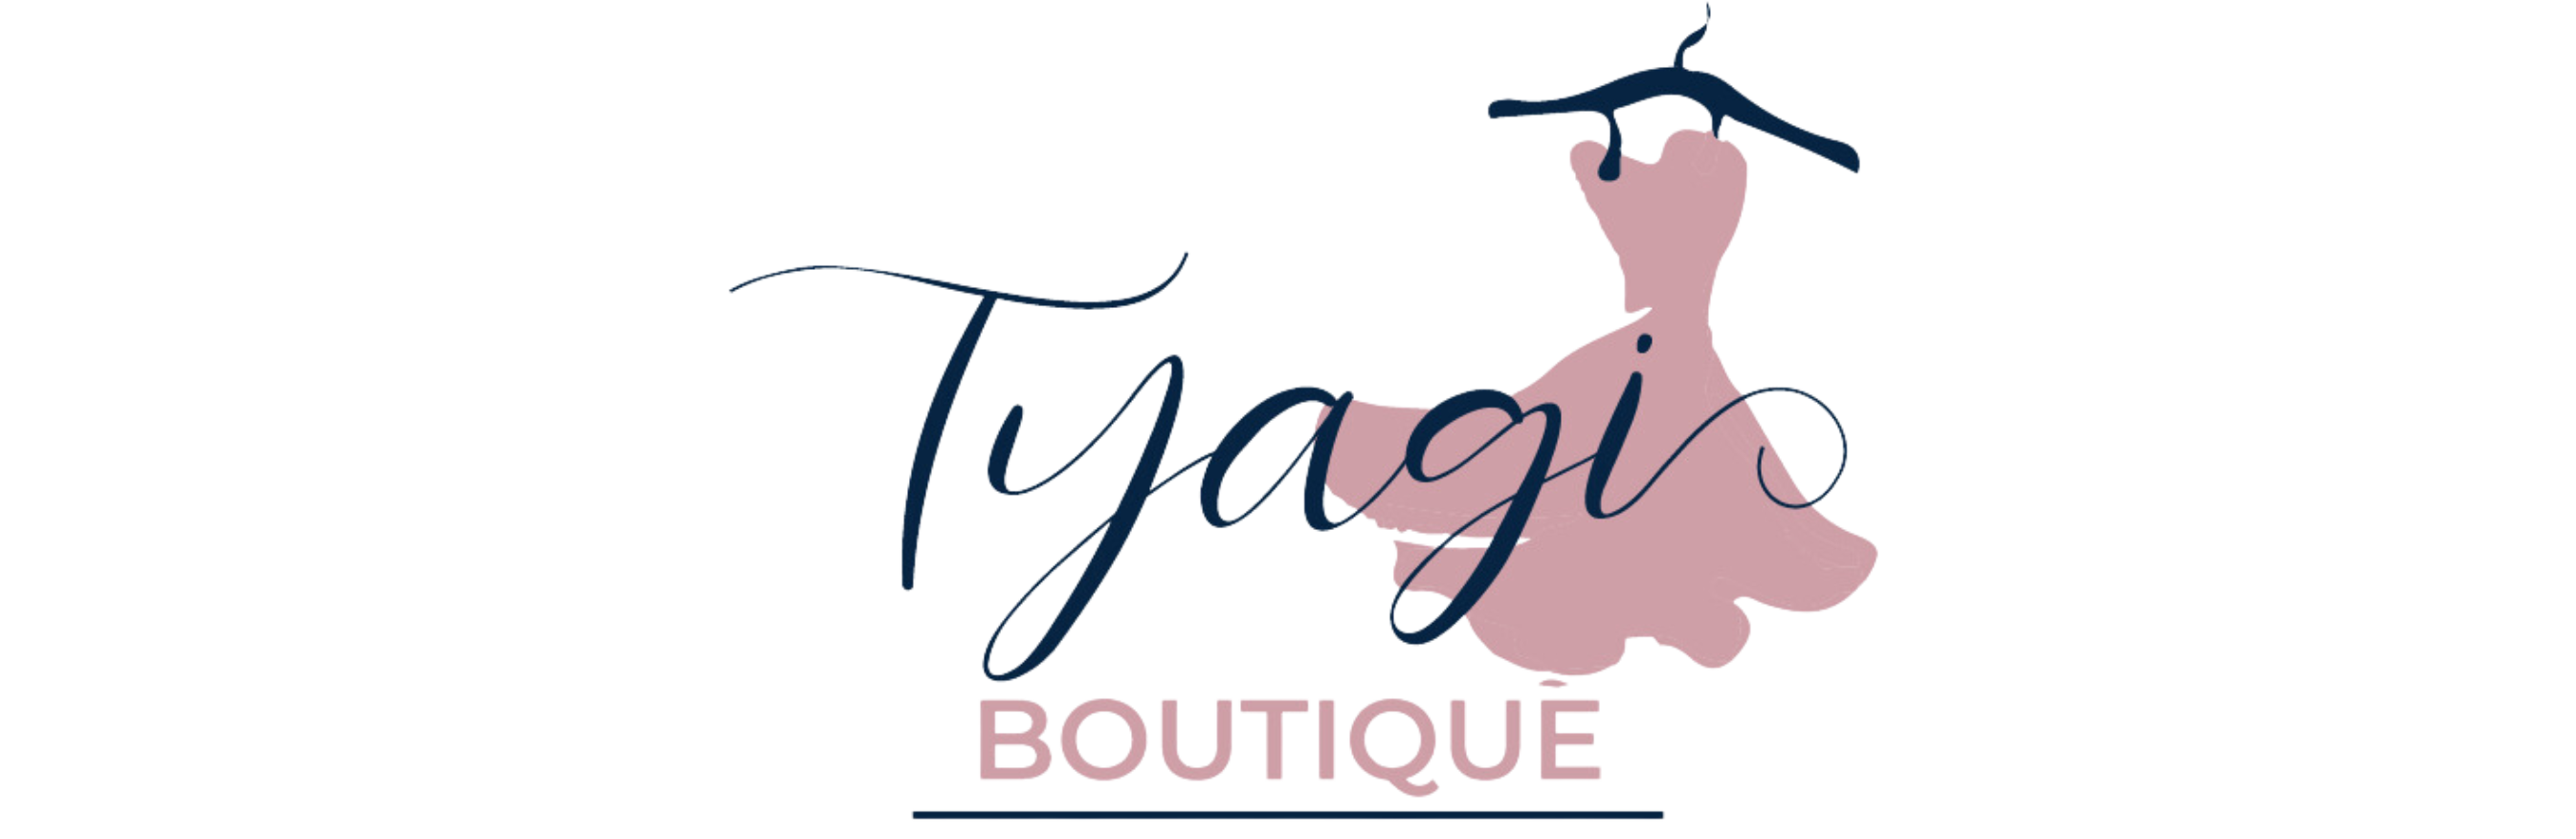 tyagi-boutique-logo